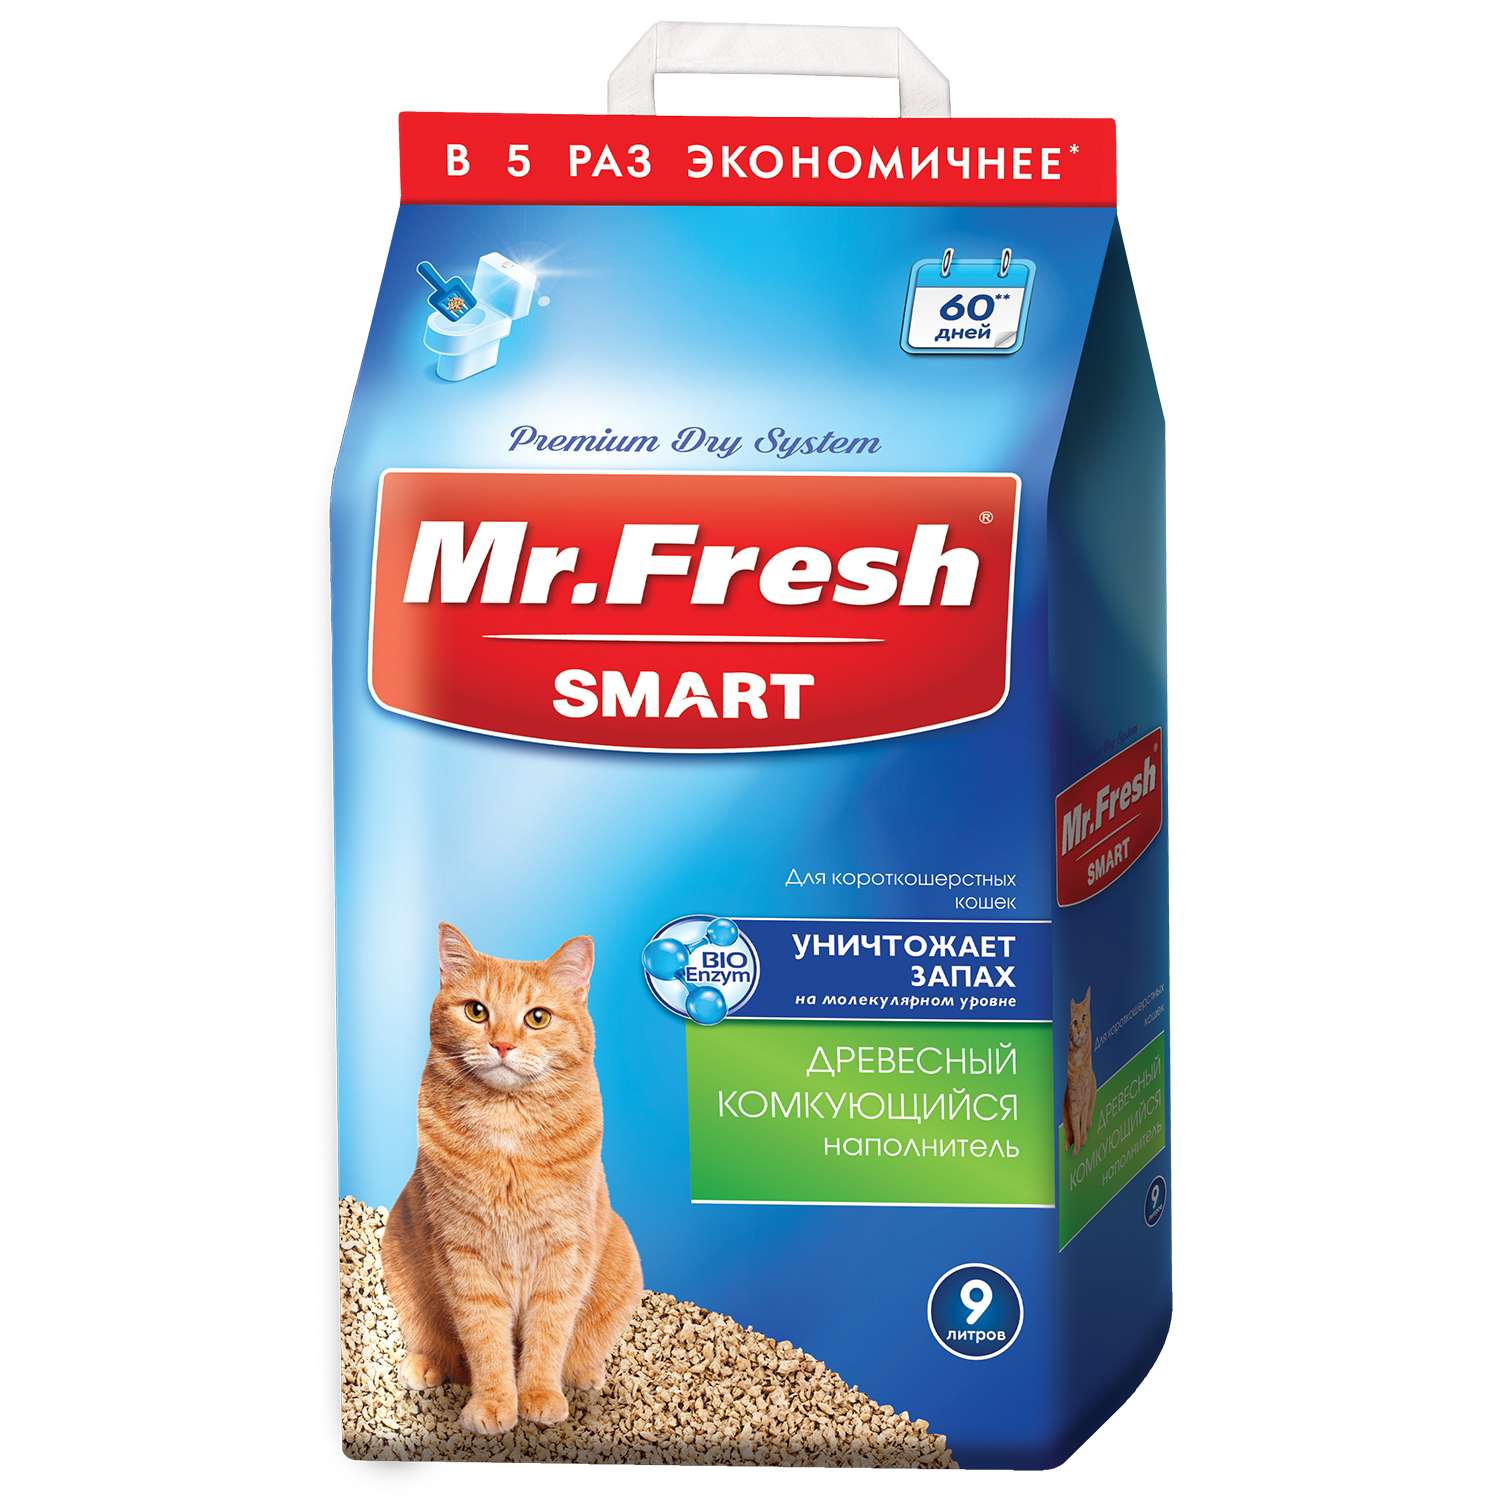 Наполнитель для кошек Mr.Fresh Smart короткошерстных 9л - фото 1